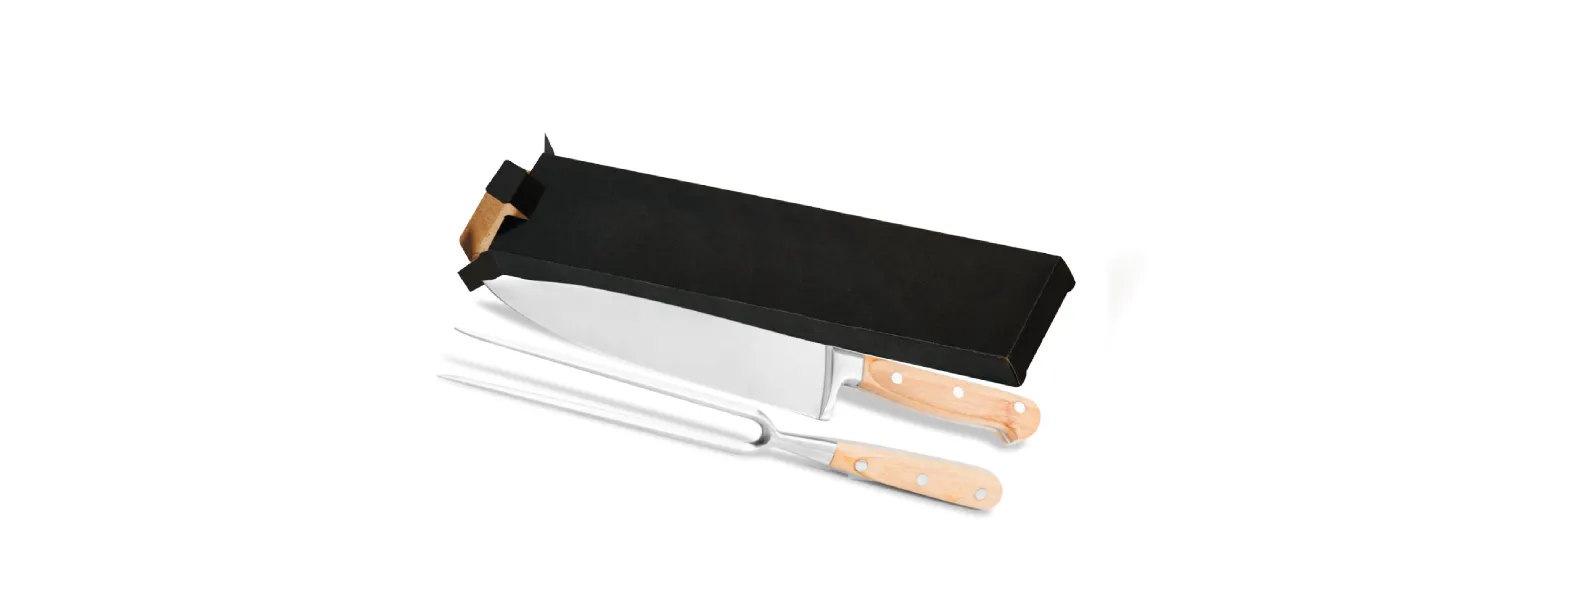 Conjunto de Faca em Bambu/Aço Inox; Acompanha faca 8'' e garfo em Bambu/Inox. Laminas forjadas Aço AISI420.